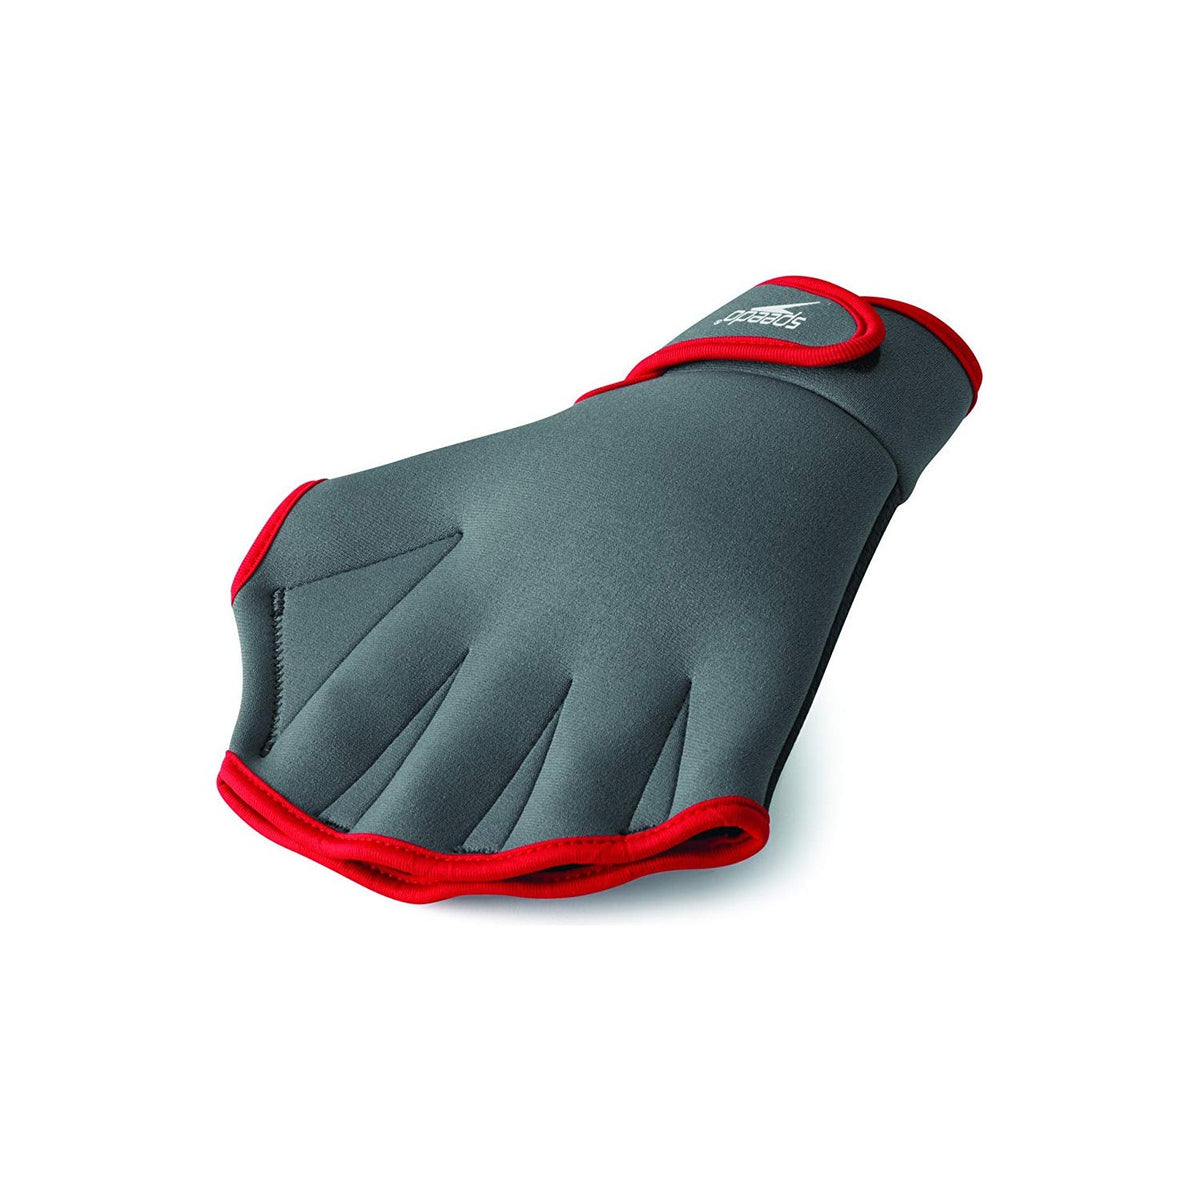 Speedo Aqua Fit Training Swim Gloves